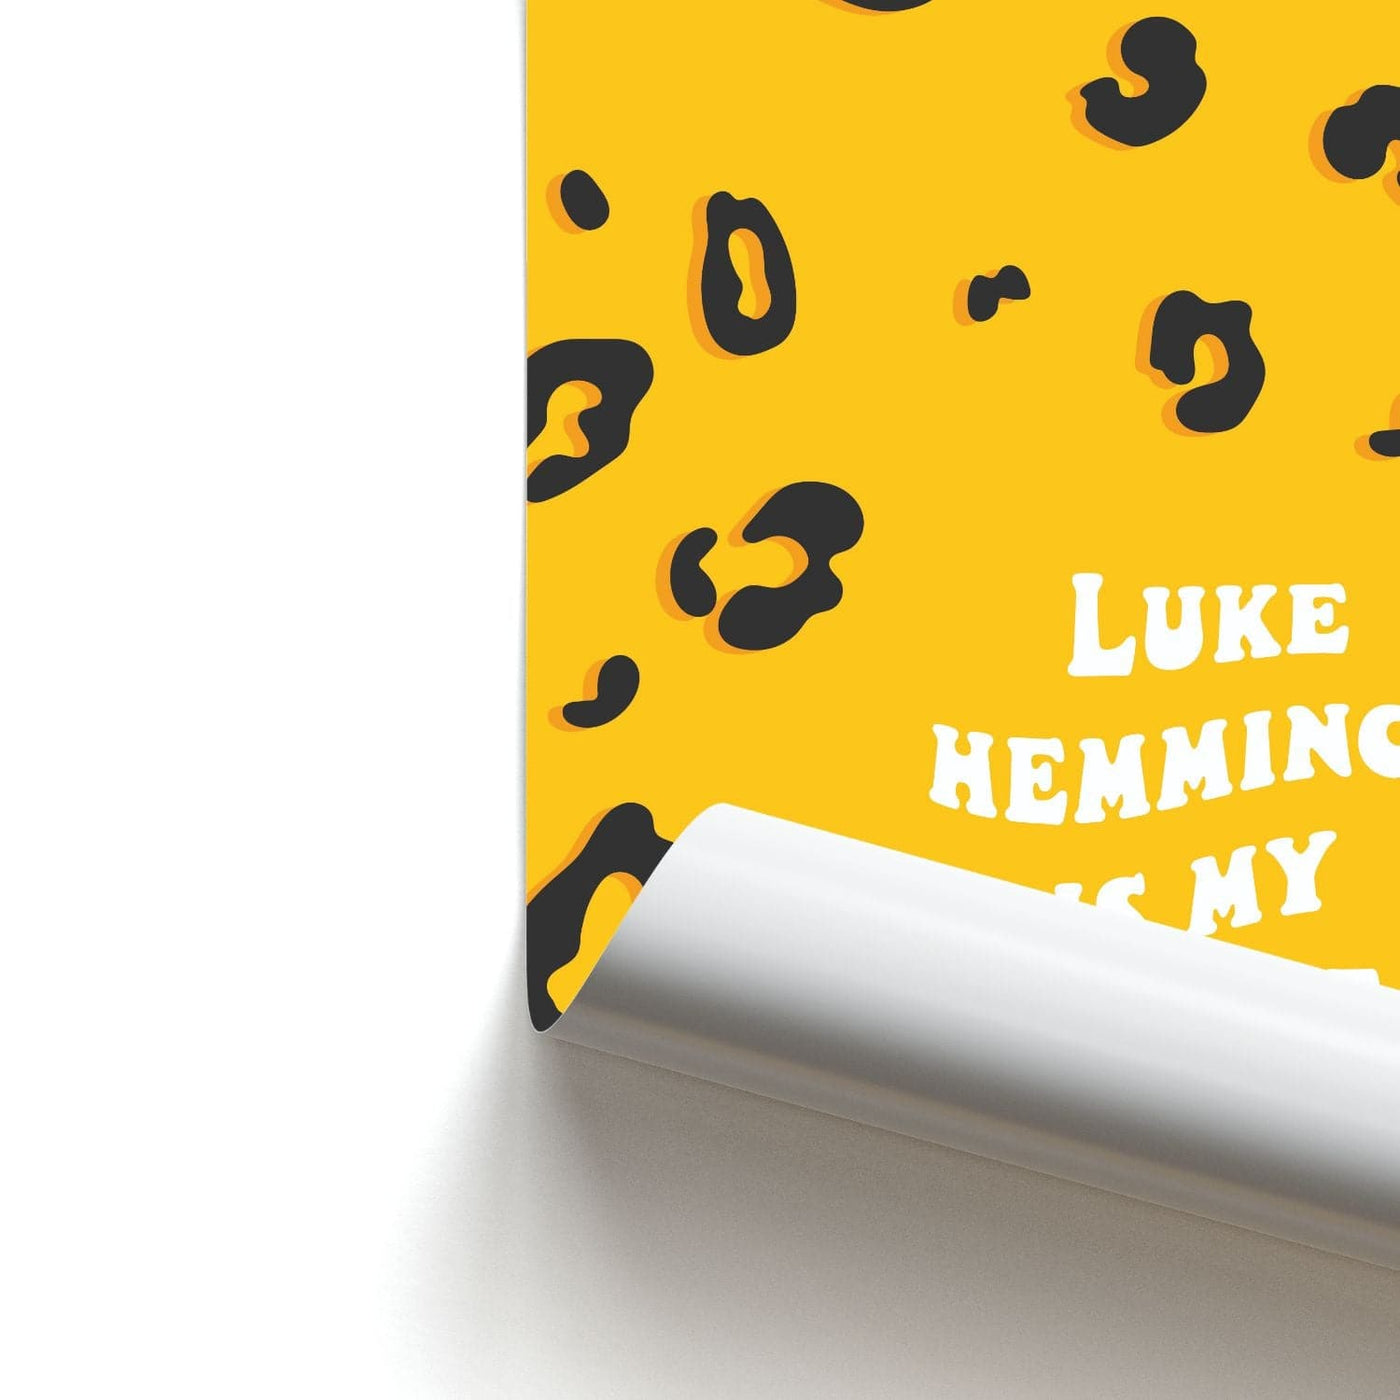 Luke Hemmings Is My Spirit Animal - 5 Seconds Of Summer  Poster